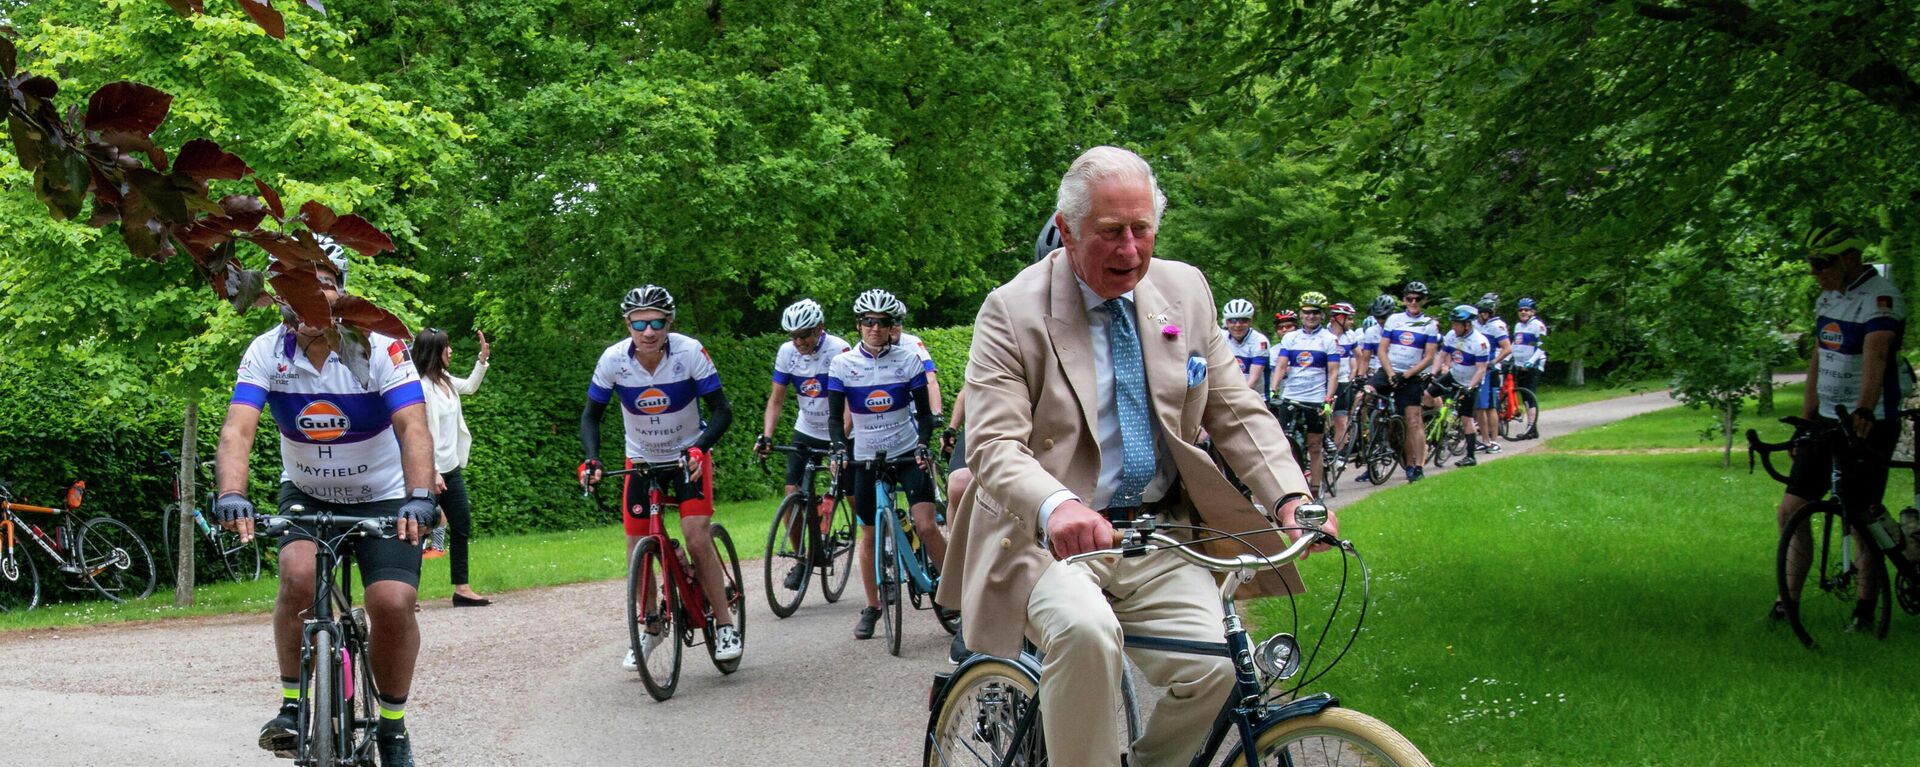 Британский принц Чарльз едет на велосипеде в Лондоне - Sputnik Азербайджан, 1920, 24.10.2021